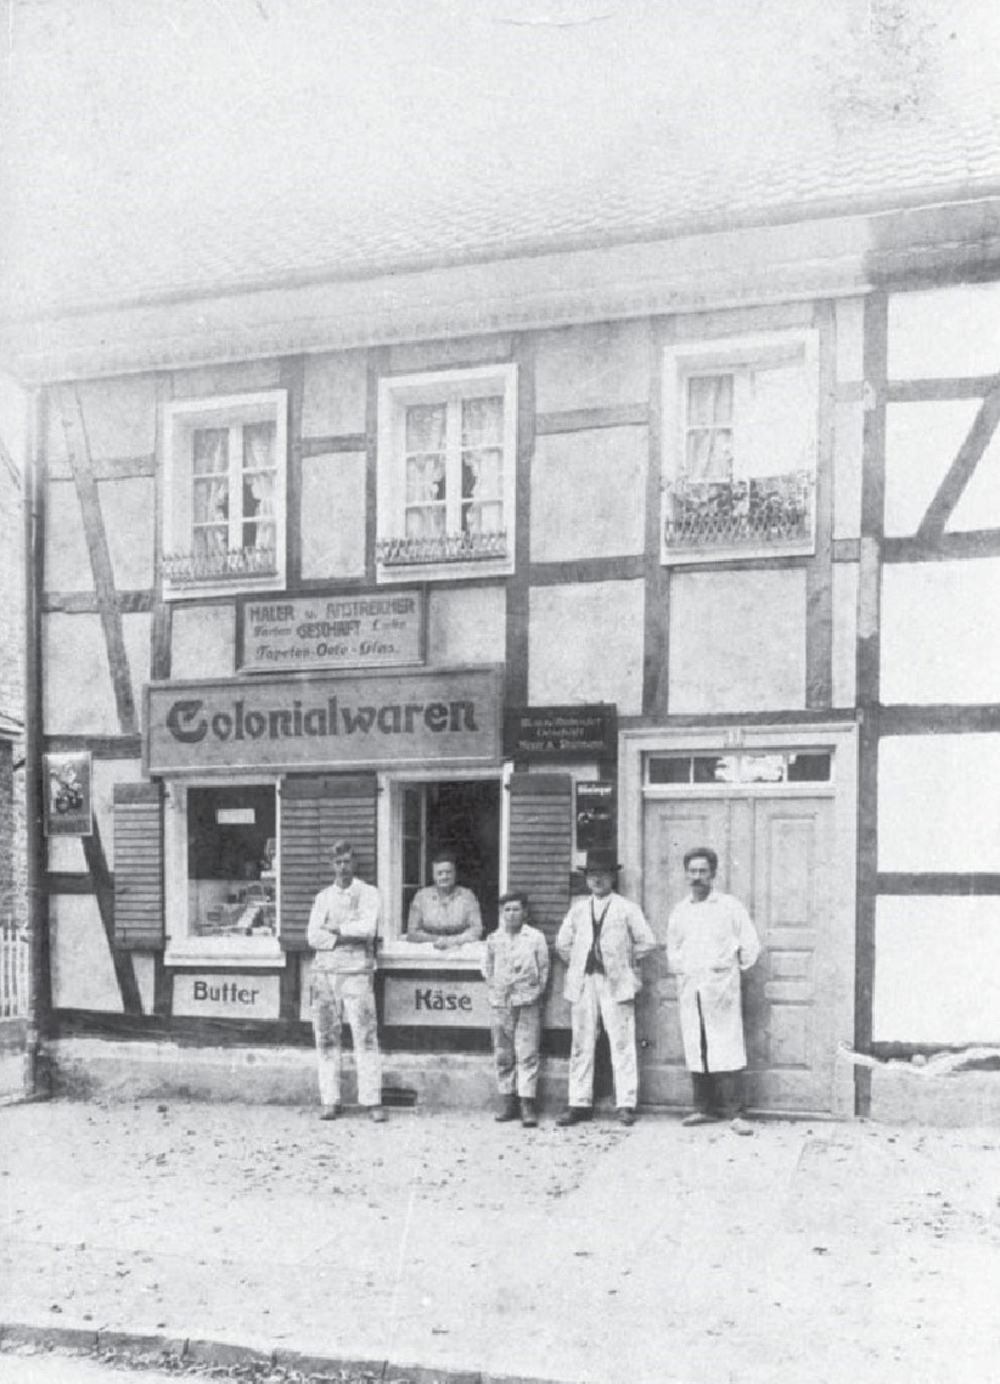 Das Bild muss in etwa Anfang der 1930er Jahre entstanden sein, da die Familie Hüser bis 1929/30 im Mühlenweg gewohnt hat. Im Fenster ist Frau Hüser zu sehen.